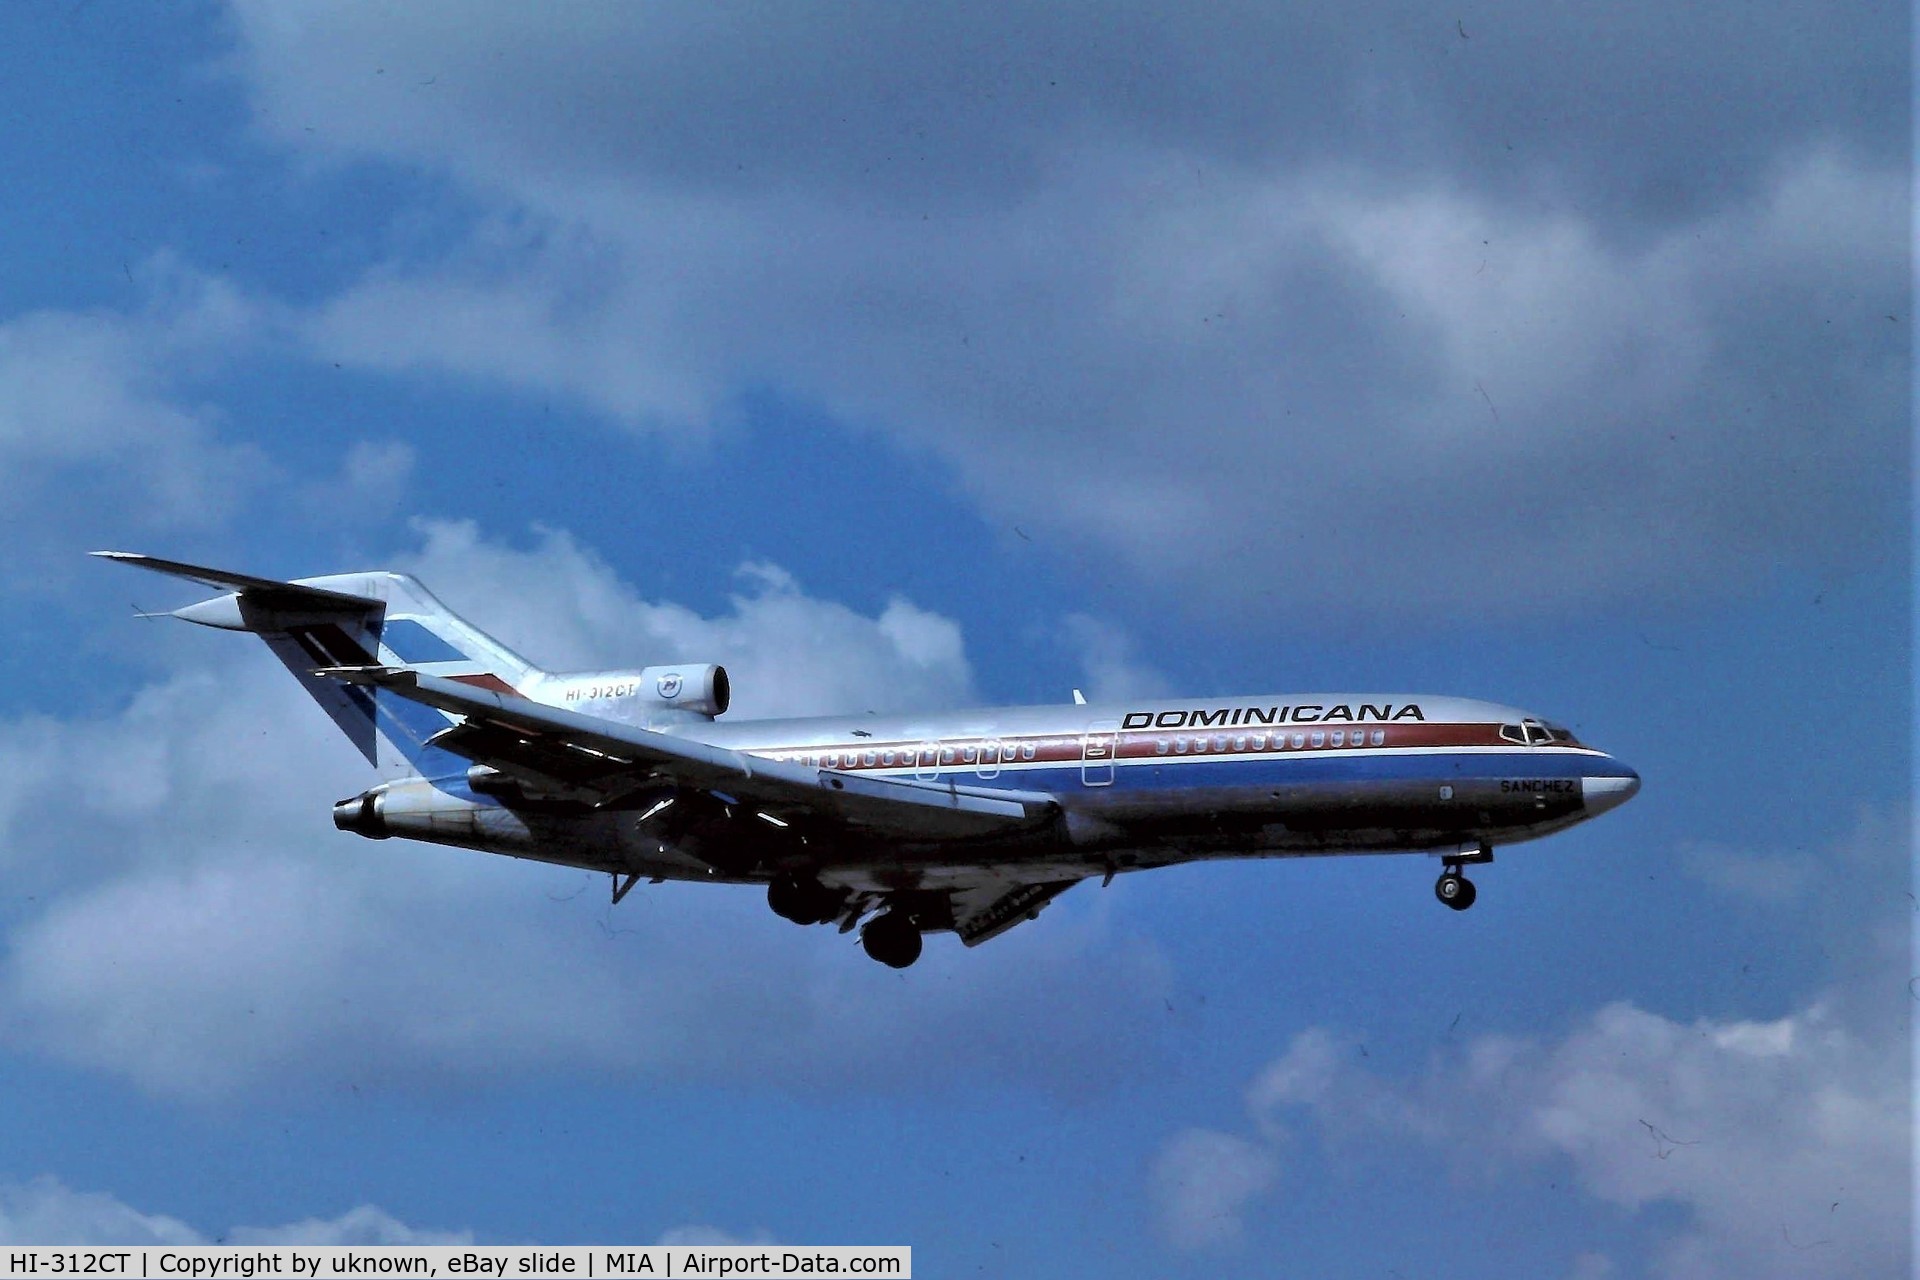 HI-312CT, 1967 Boeing 727-173C C/N 19505, eBay slide